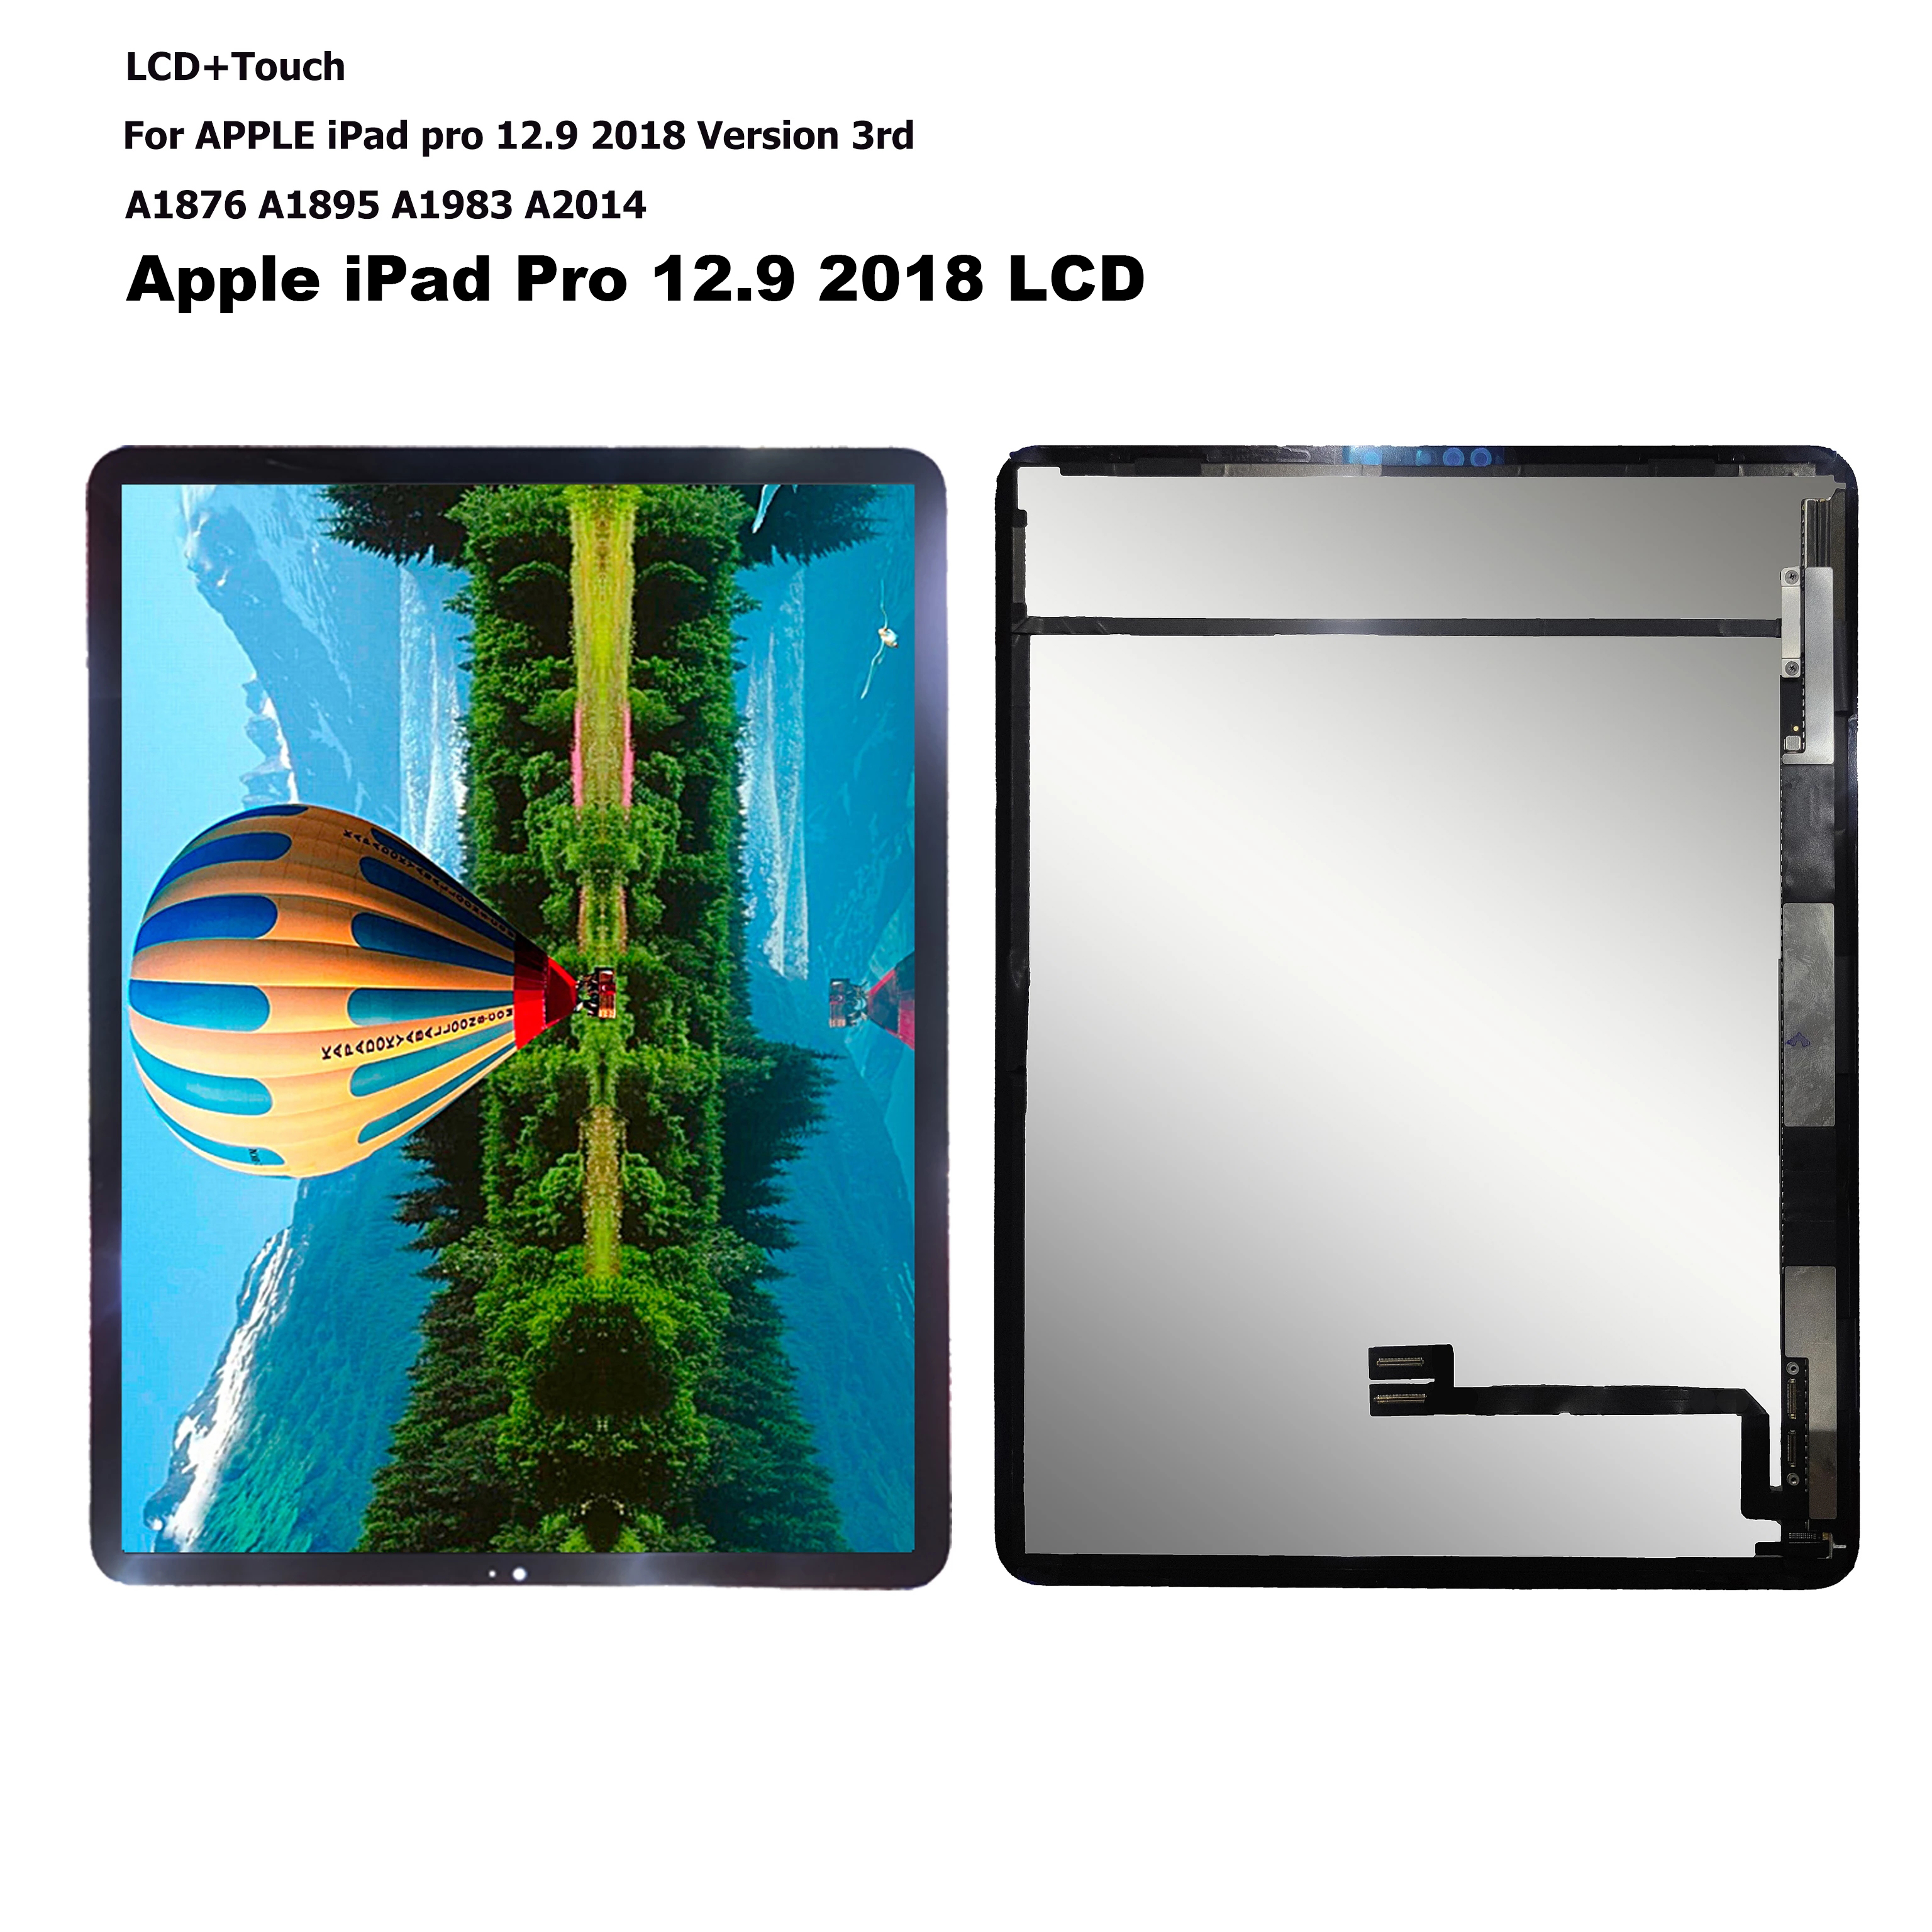 iPad Pro 12.9 2018 LCD screen